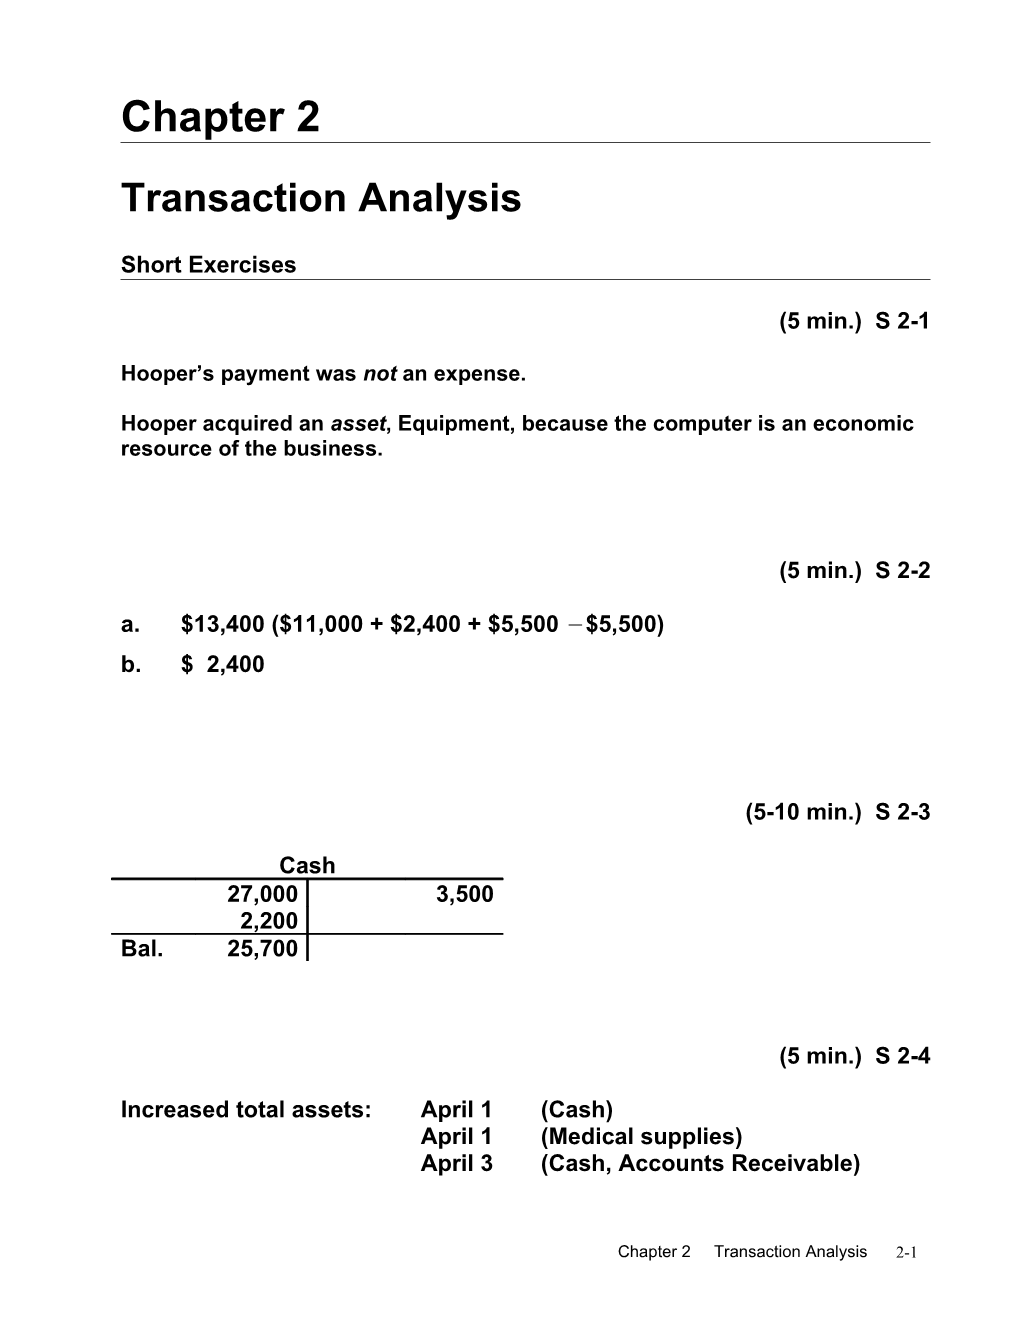 Transaction Analysis